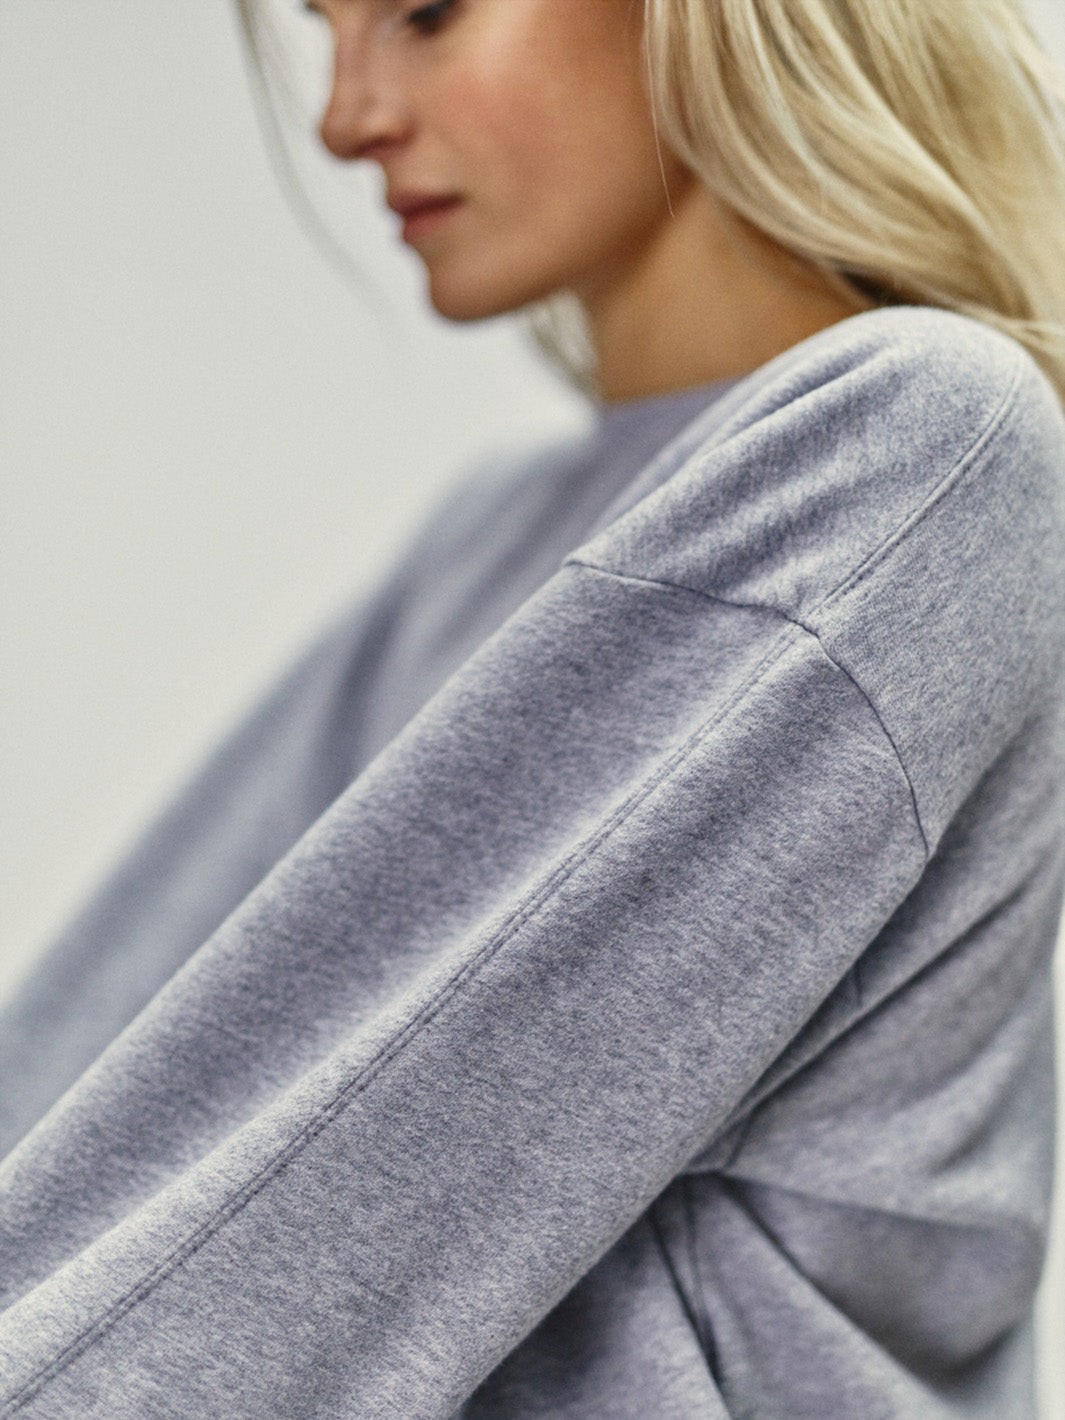 Damen Sweatshirt Rundhals Ausschnitt grau melange organic Cotton hergestellt in Portugal